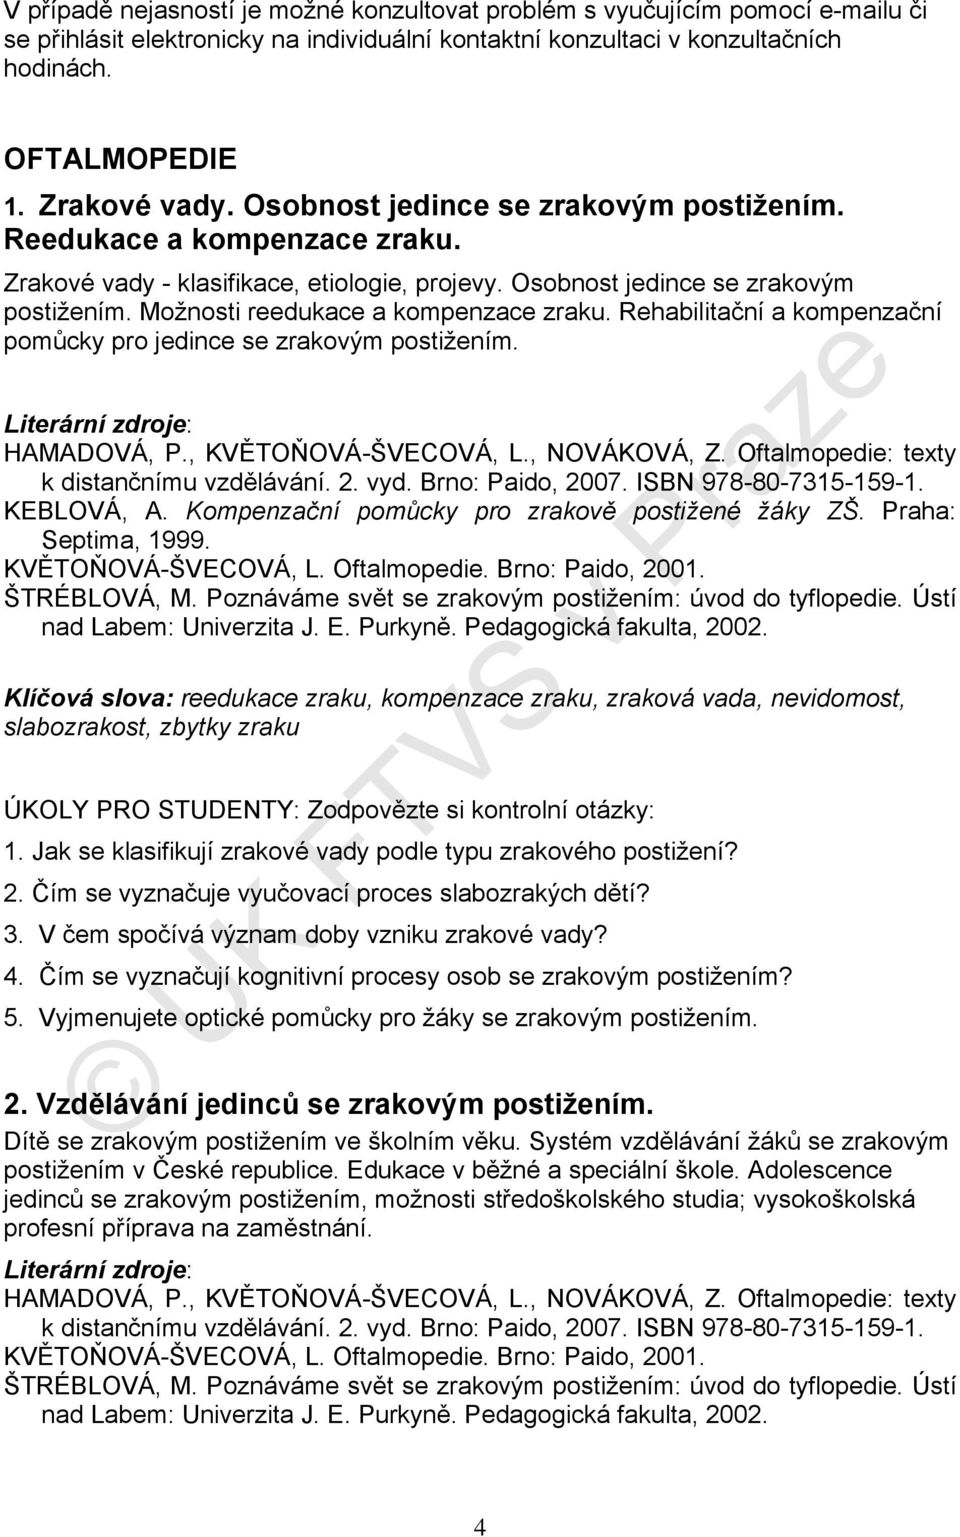 Rehabilitační a kompenzační pomůcky pro jedince se zrakovým postižením. HAMADOVÁ, P., KVĚTOŇOVÁ-ŠVECOVÁ, L., NOVÁKOVÁ, Z. Oftalmopedie: texty k distančnímu vzdělávání. 2. vyd. Brno: Paido, 2007.